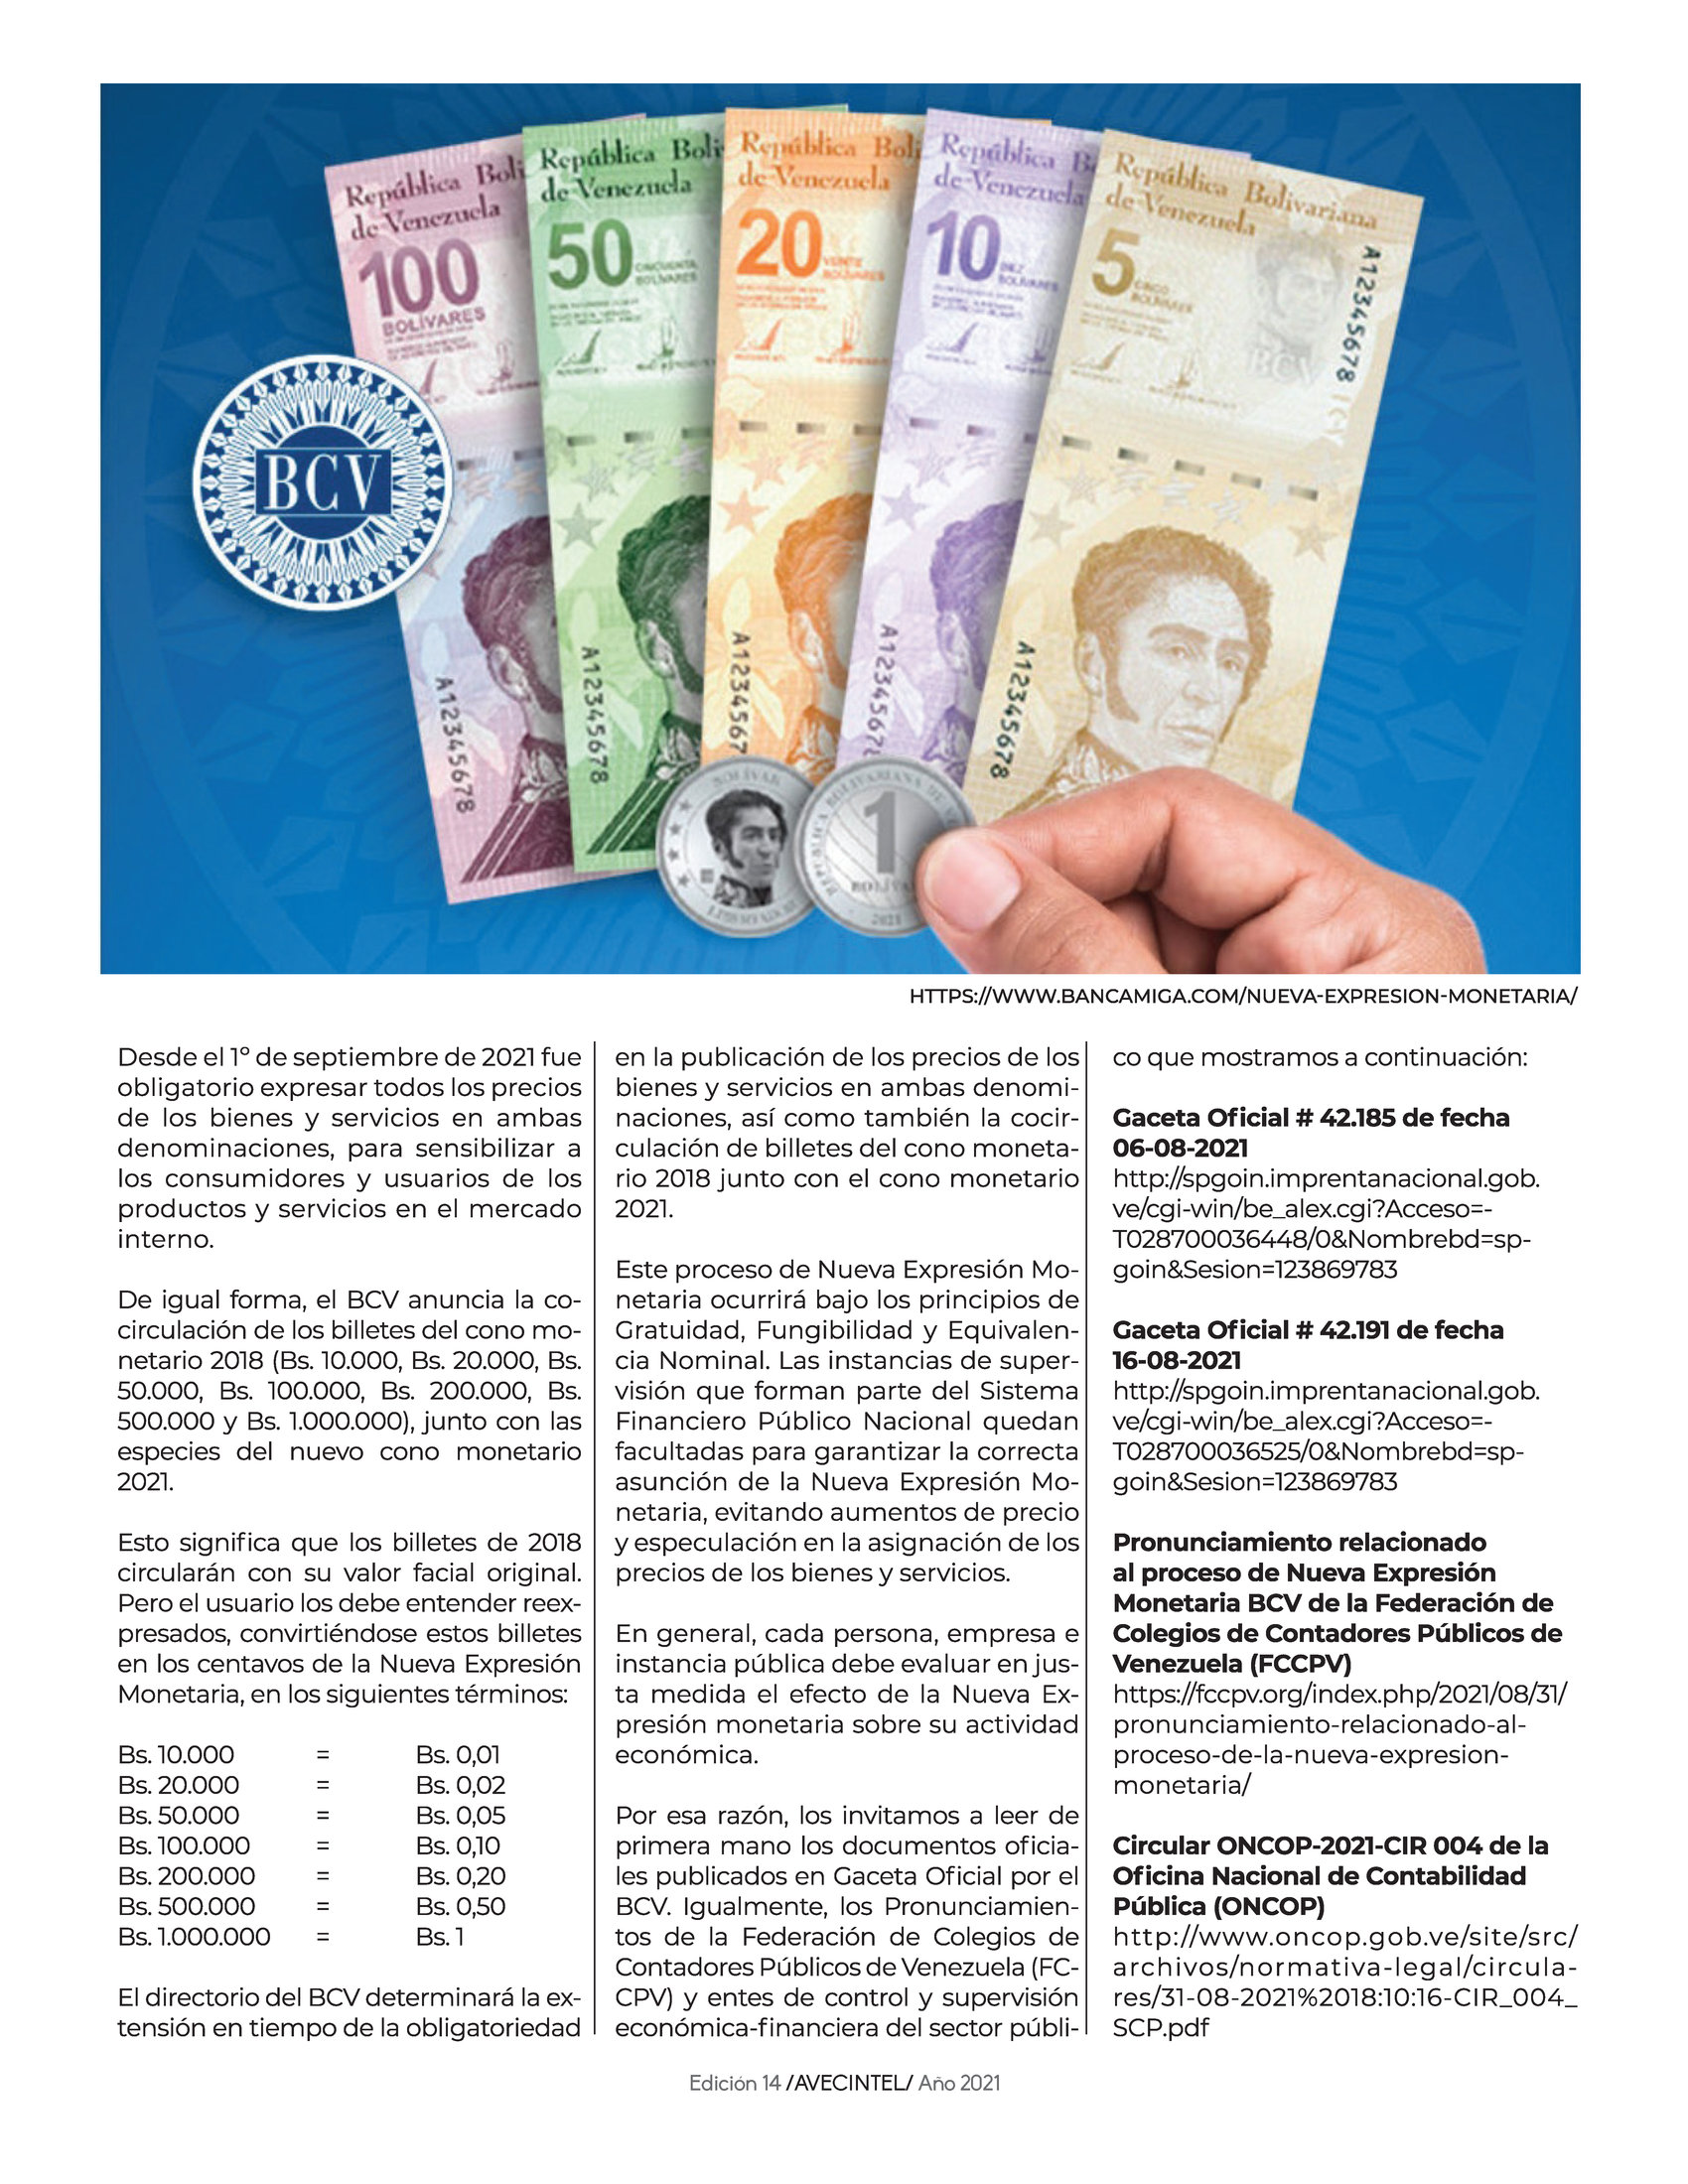 25-REV Aaron Olmos Nueva Expresion Monetaria BCV 2021